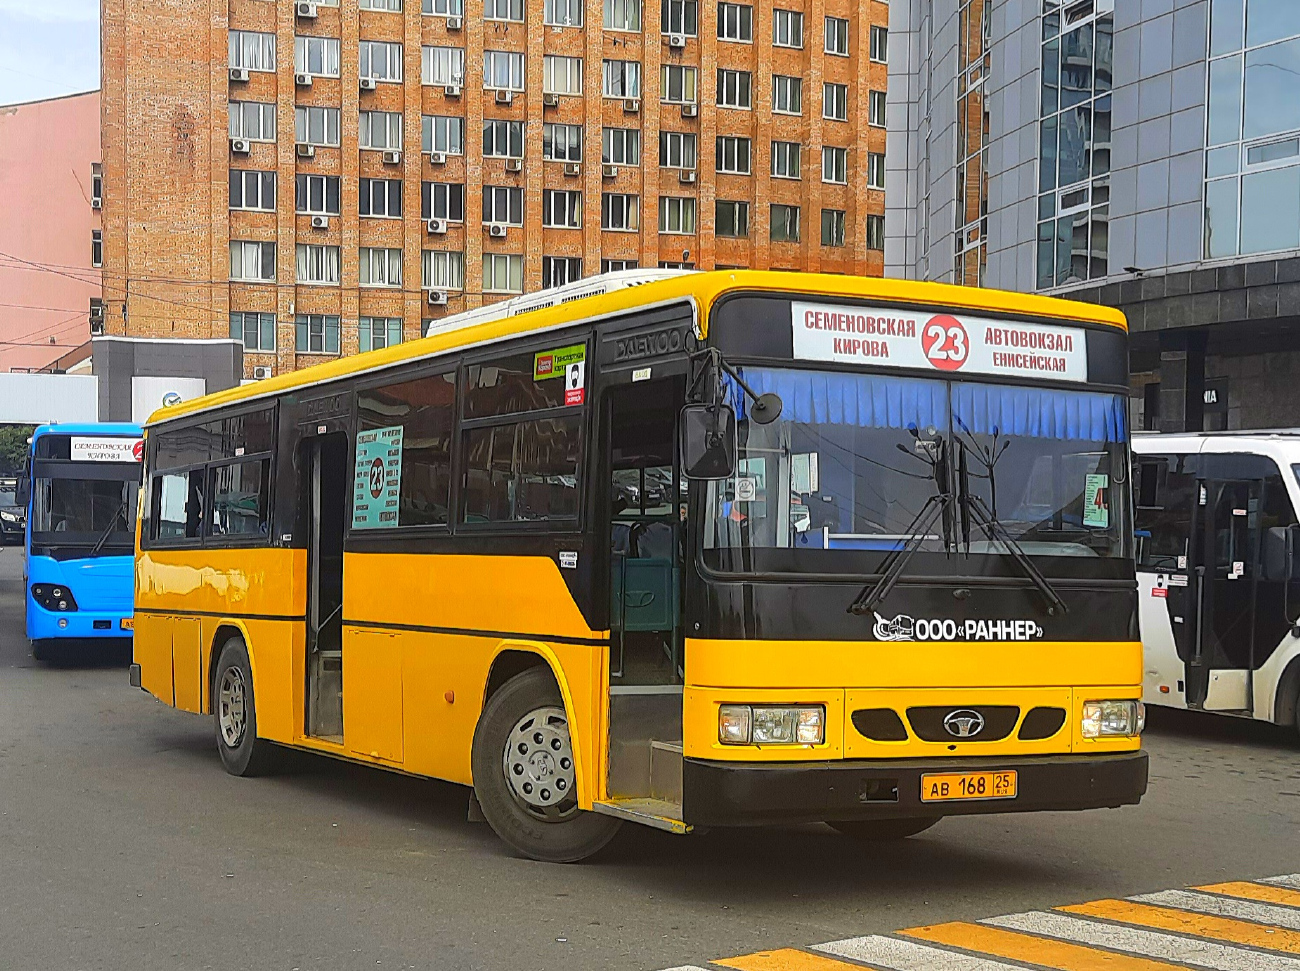 Vladivostok, Daewoo BS106 (BUSAN) nr. АВ 168 25